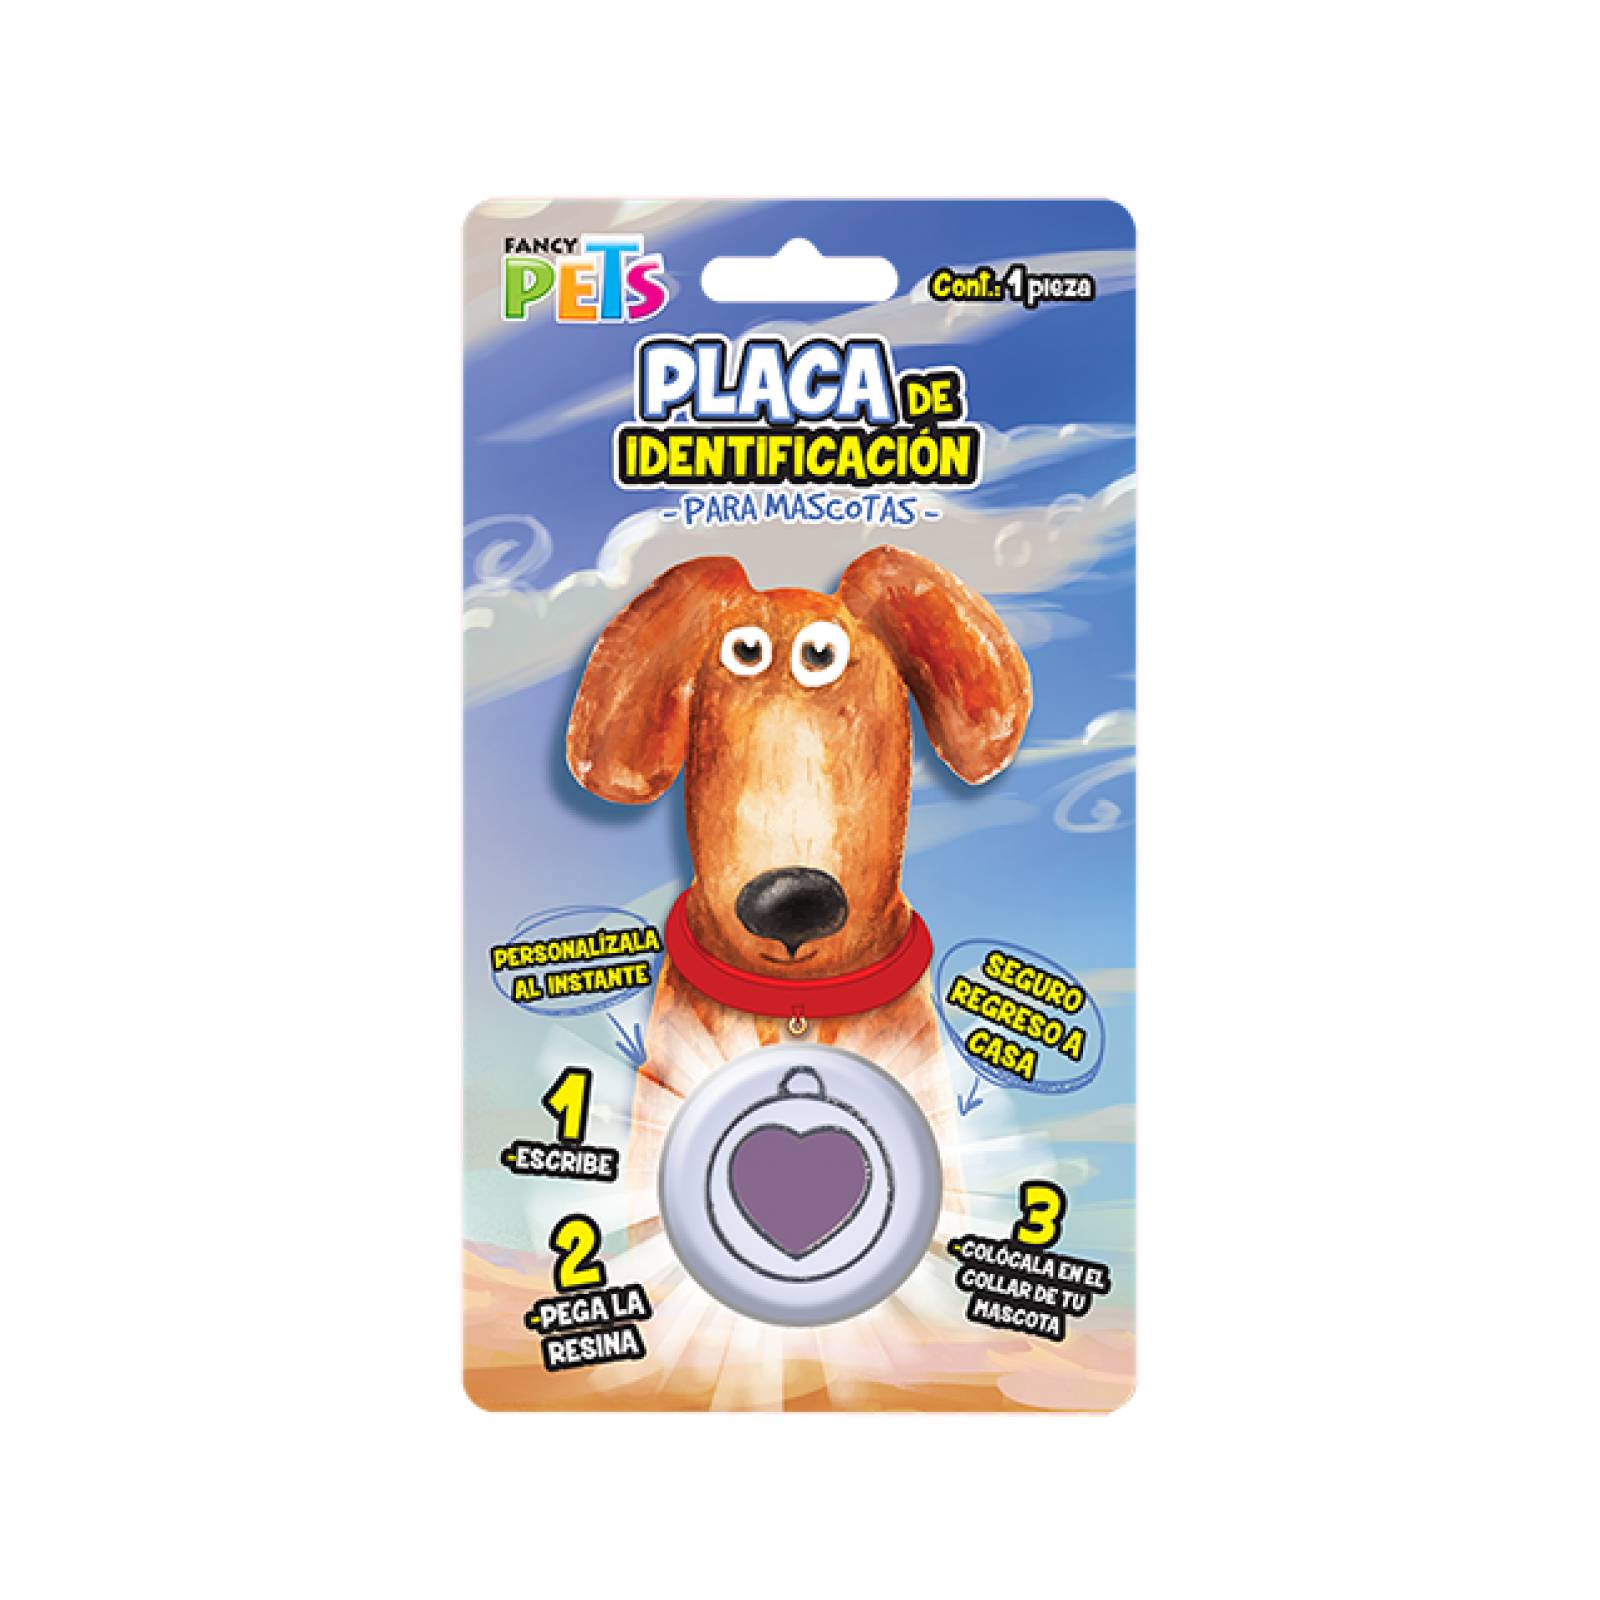 Fancy Pets Placa para Mascota forma de Corazon en Circulo 1 pz